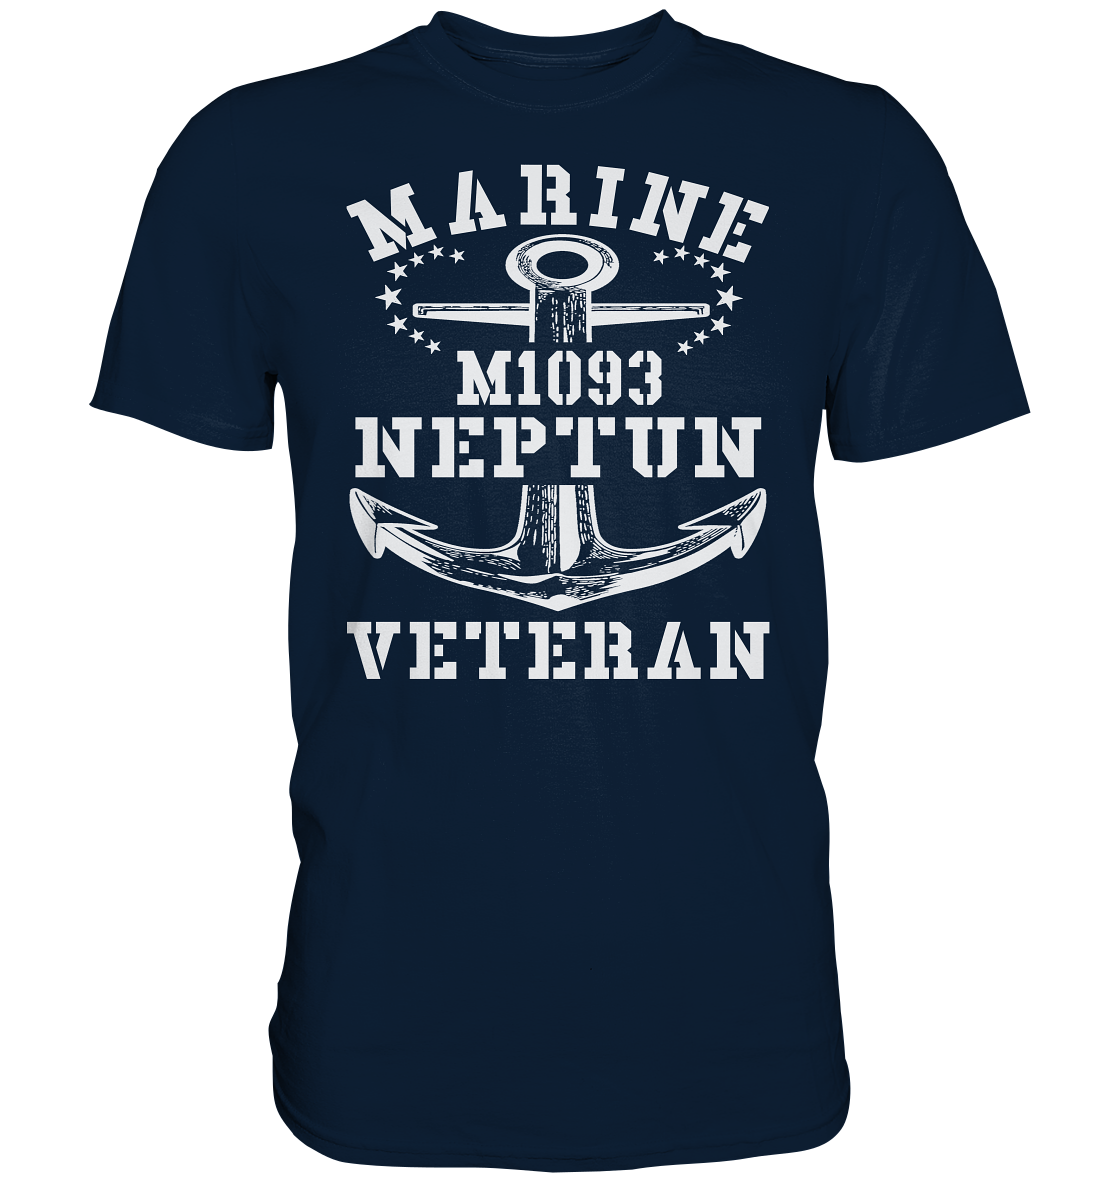 SM-Boot M1093 NEPTUN Marine Veteran  - Premium Shirt